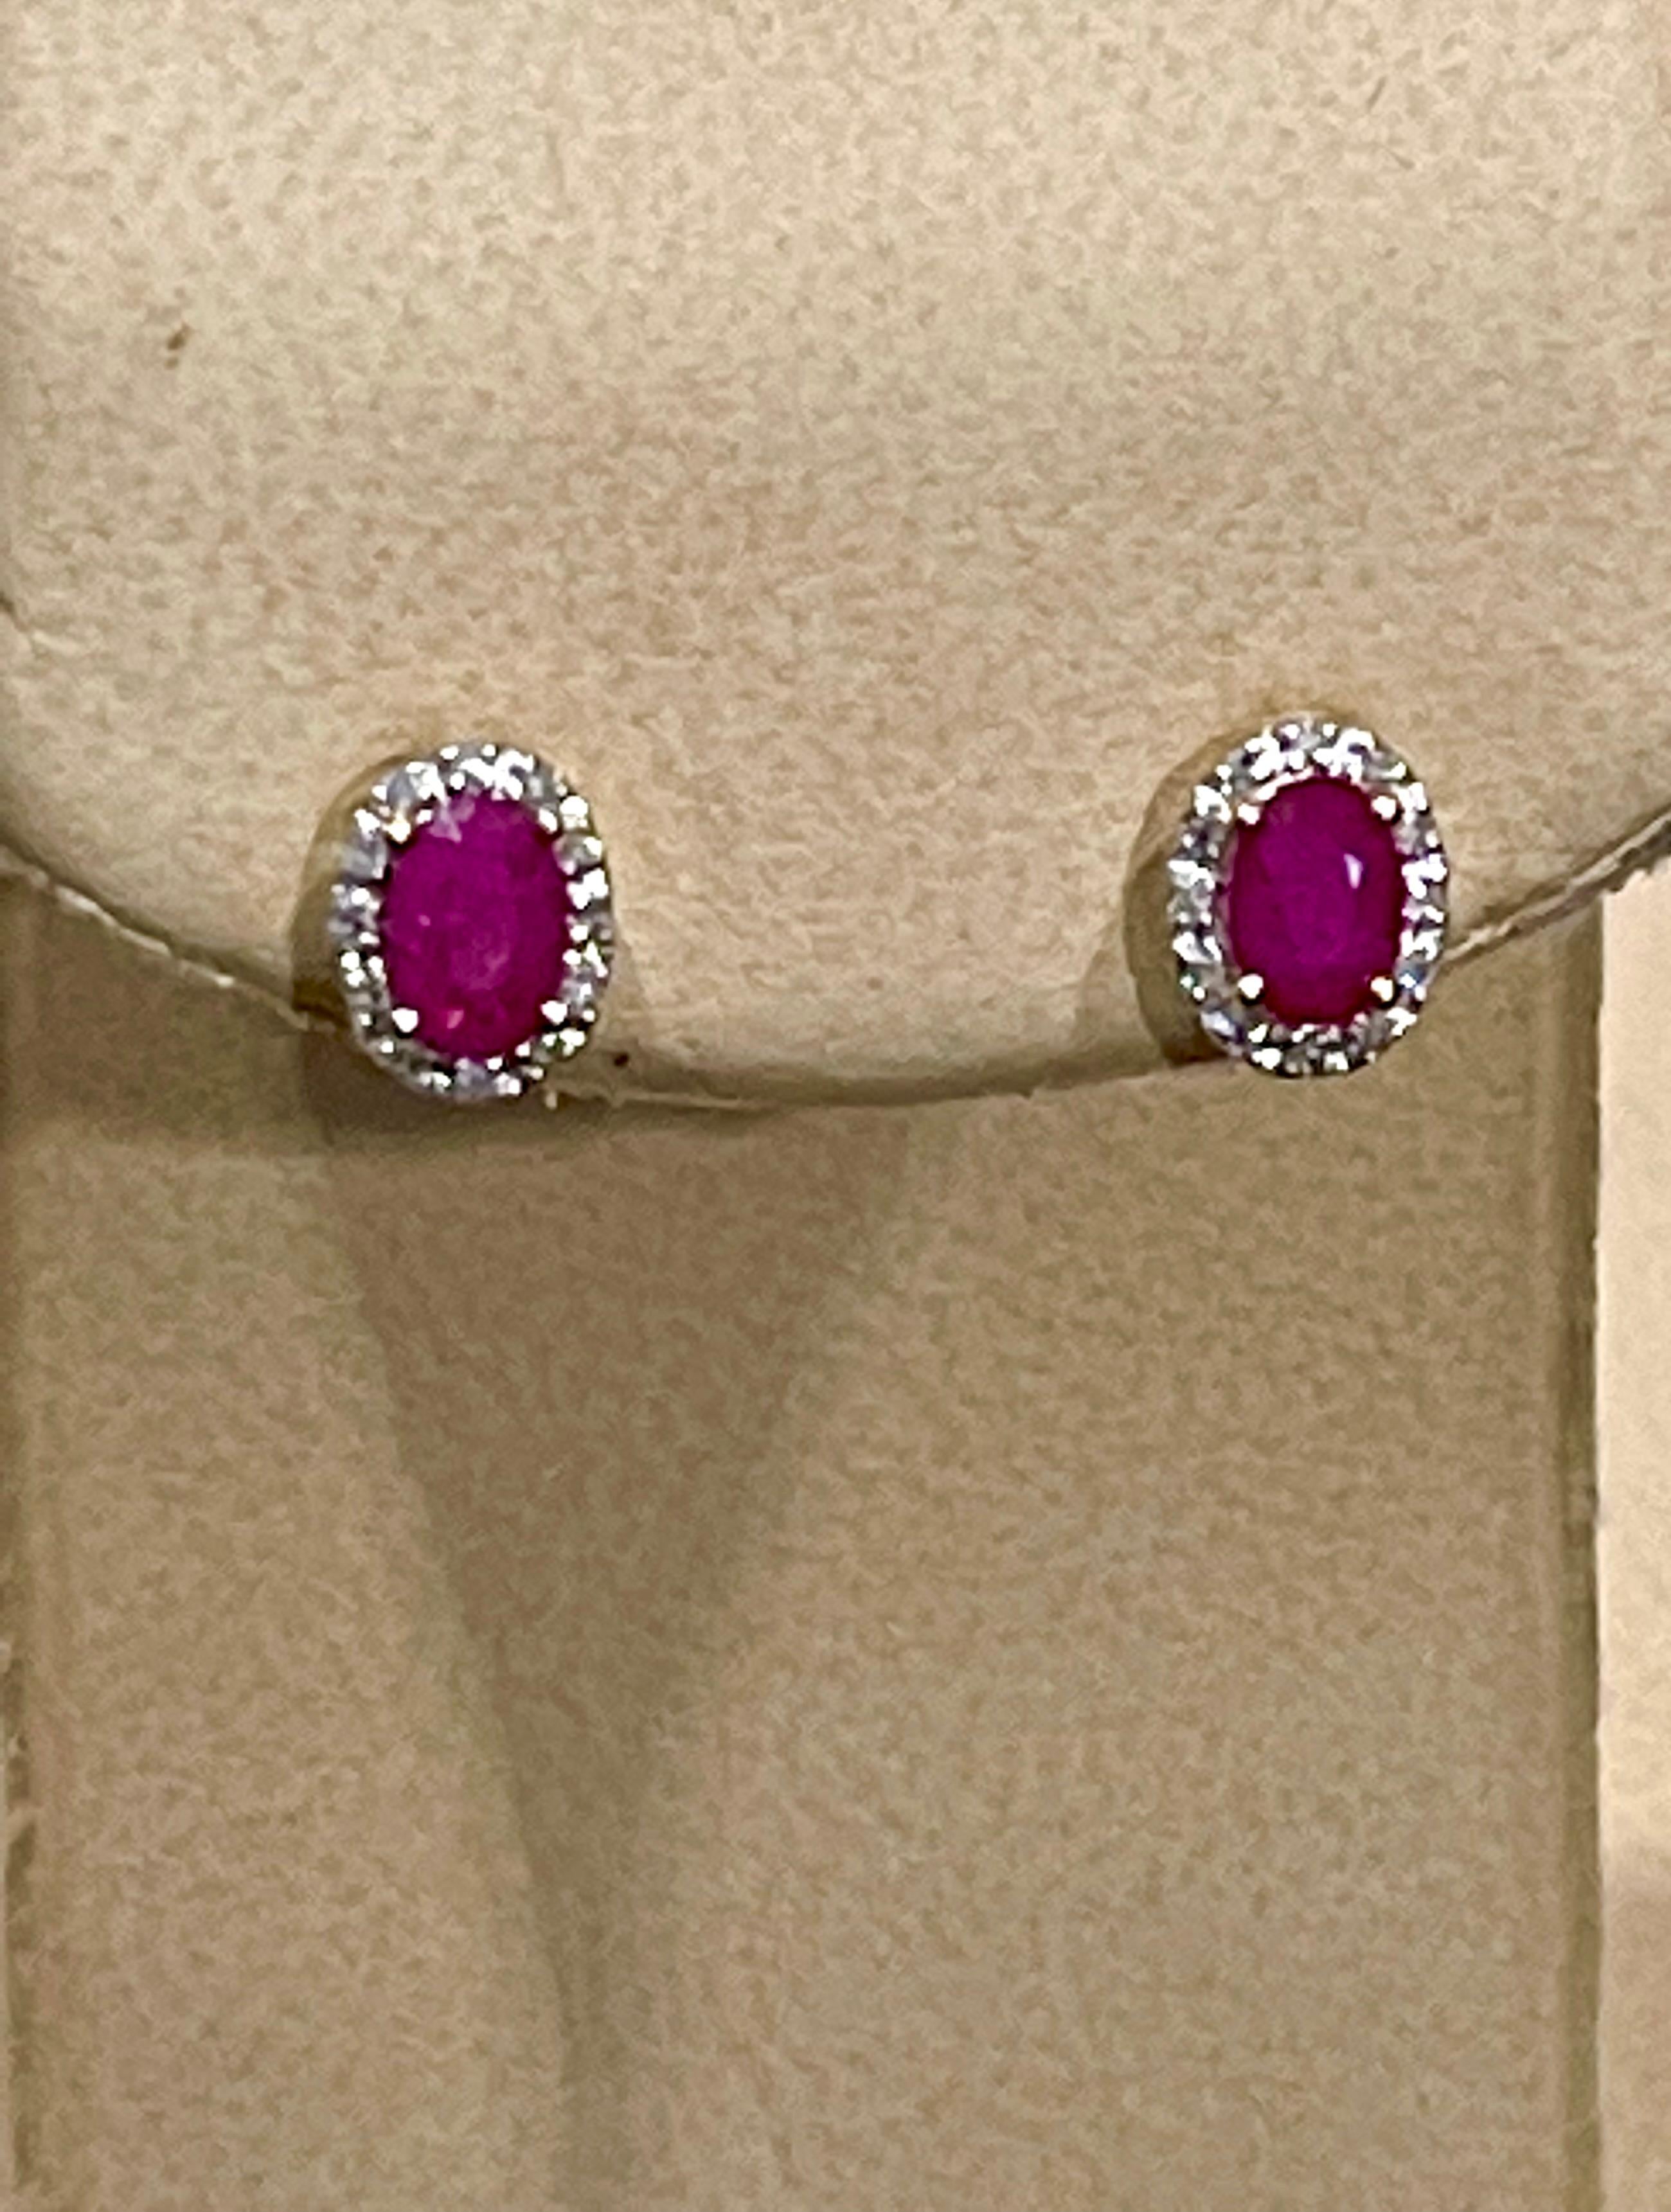 Cette luxueuse paire de boucles d'oreilles halo en rubis est conçue en or jaune 14 carats. Les rubis rouges ovales sont entourés d'un halo éblouissant de diamants ronds.
 Boucles d'oreilles avec clou en rubis naturel ovale en or jaune 14 carats
Deux